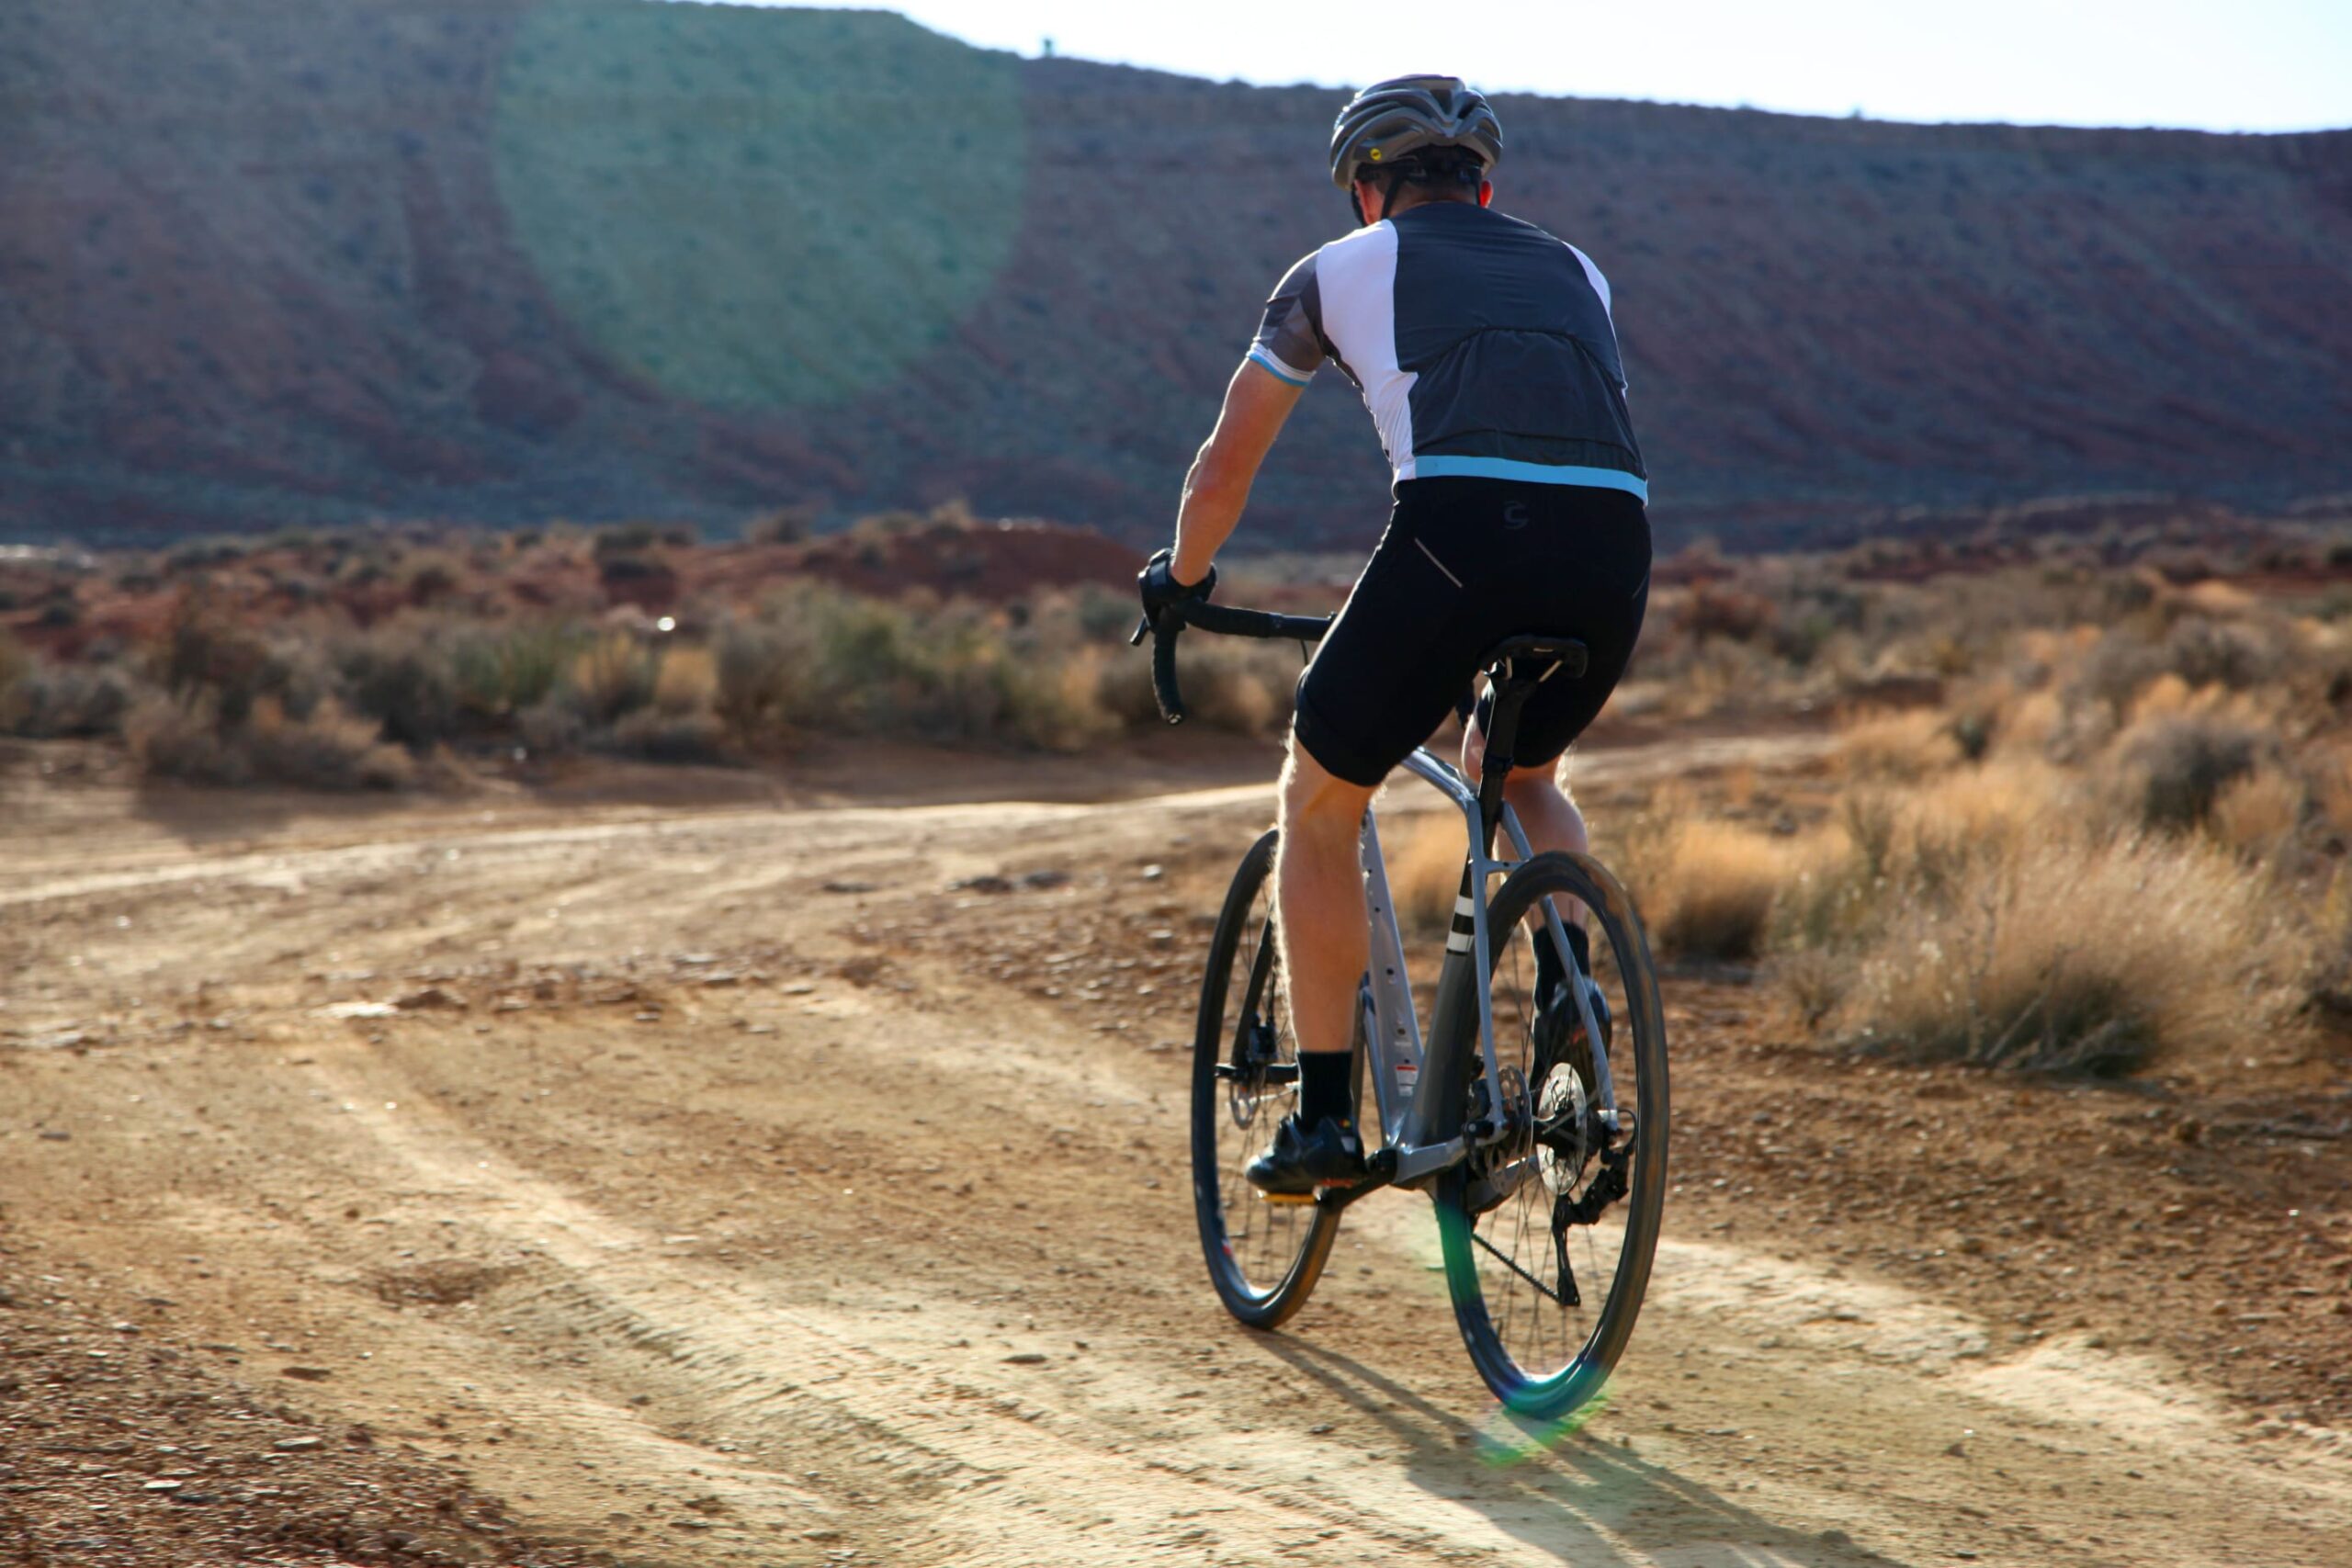 Persona en una ruta en bici por el desierto, por camino de tierra con montañas en el fondo.